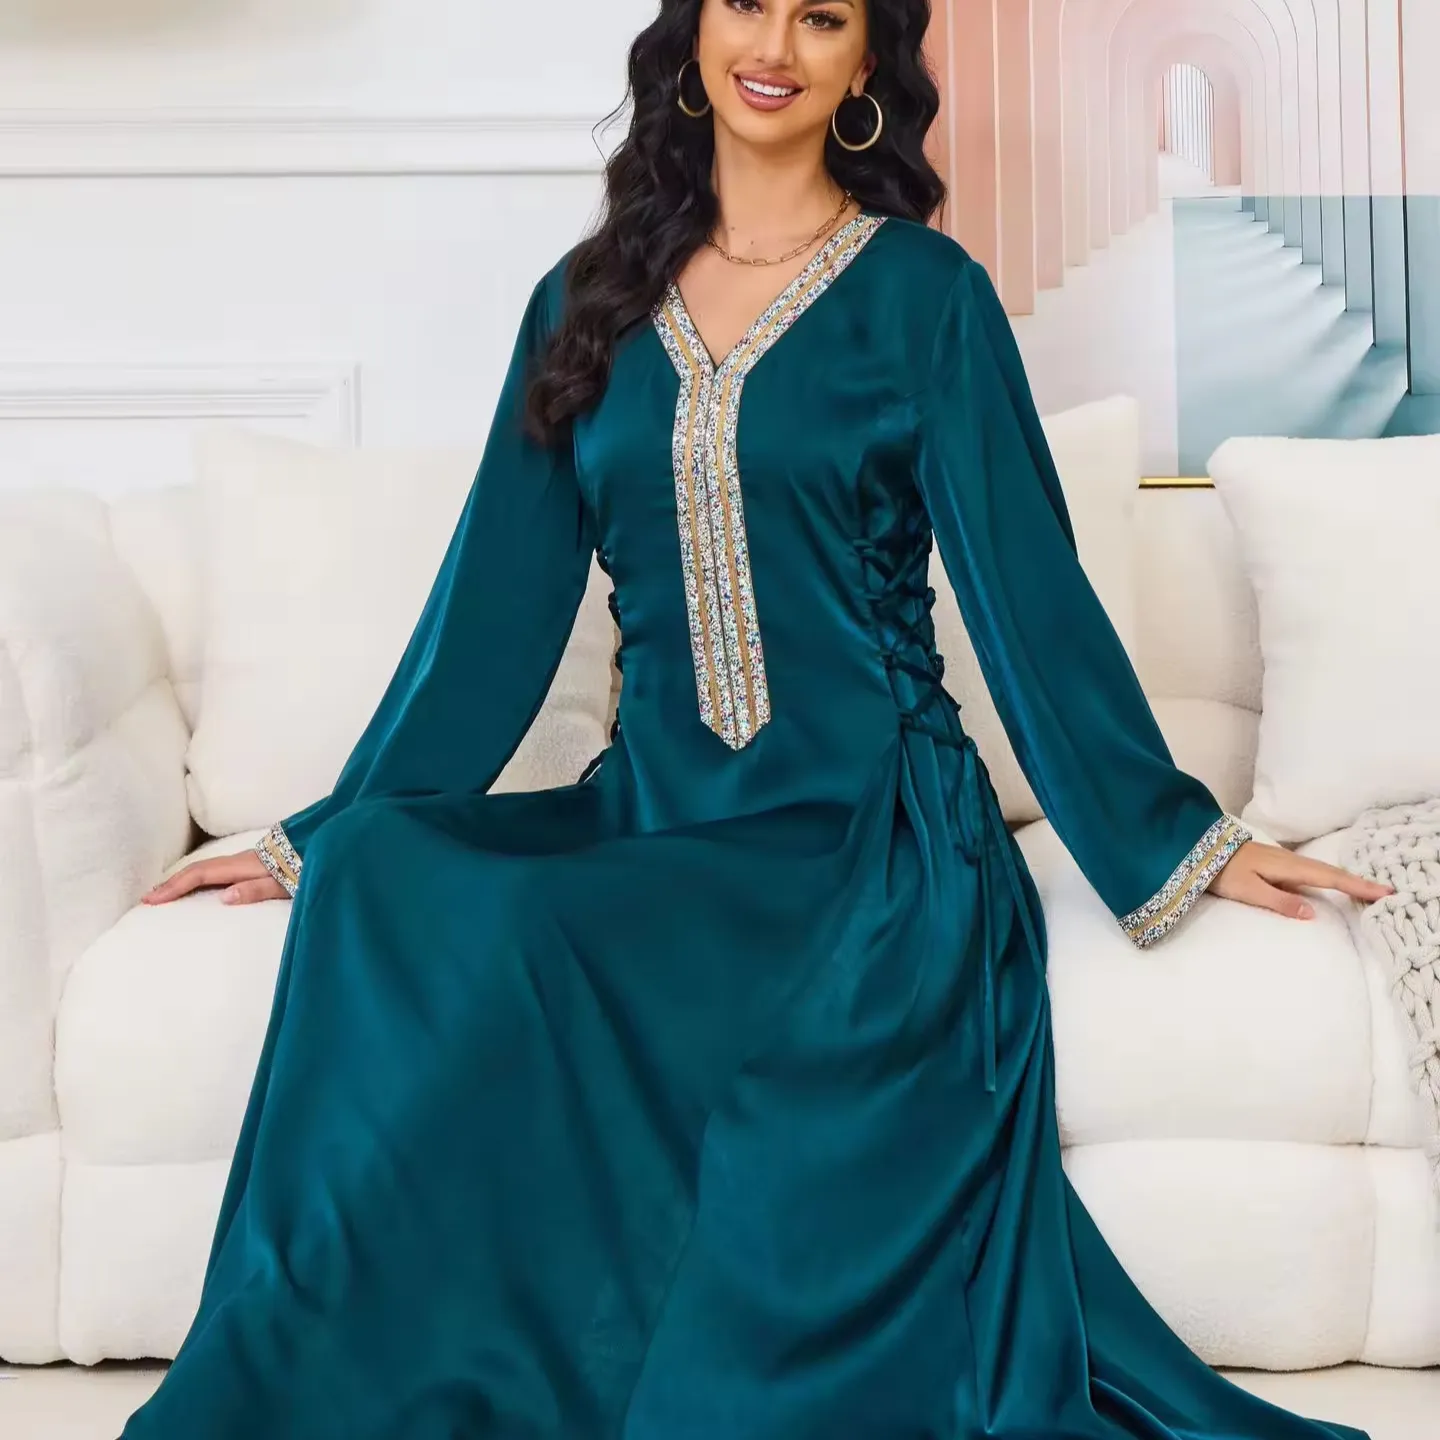 Meilleure vente Robe musulmane pour femme Couleur unie Abayas style Dubaï Vêtements islamiques Longue robe musulmane pour femme